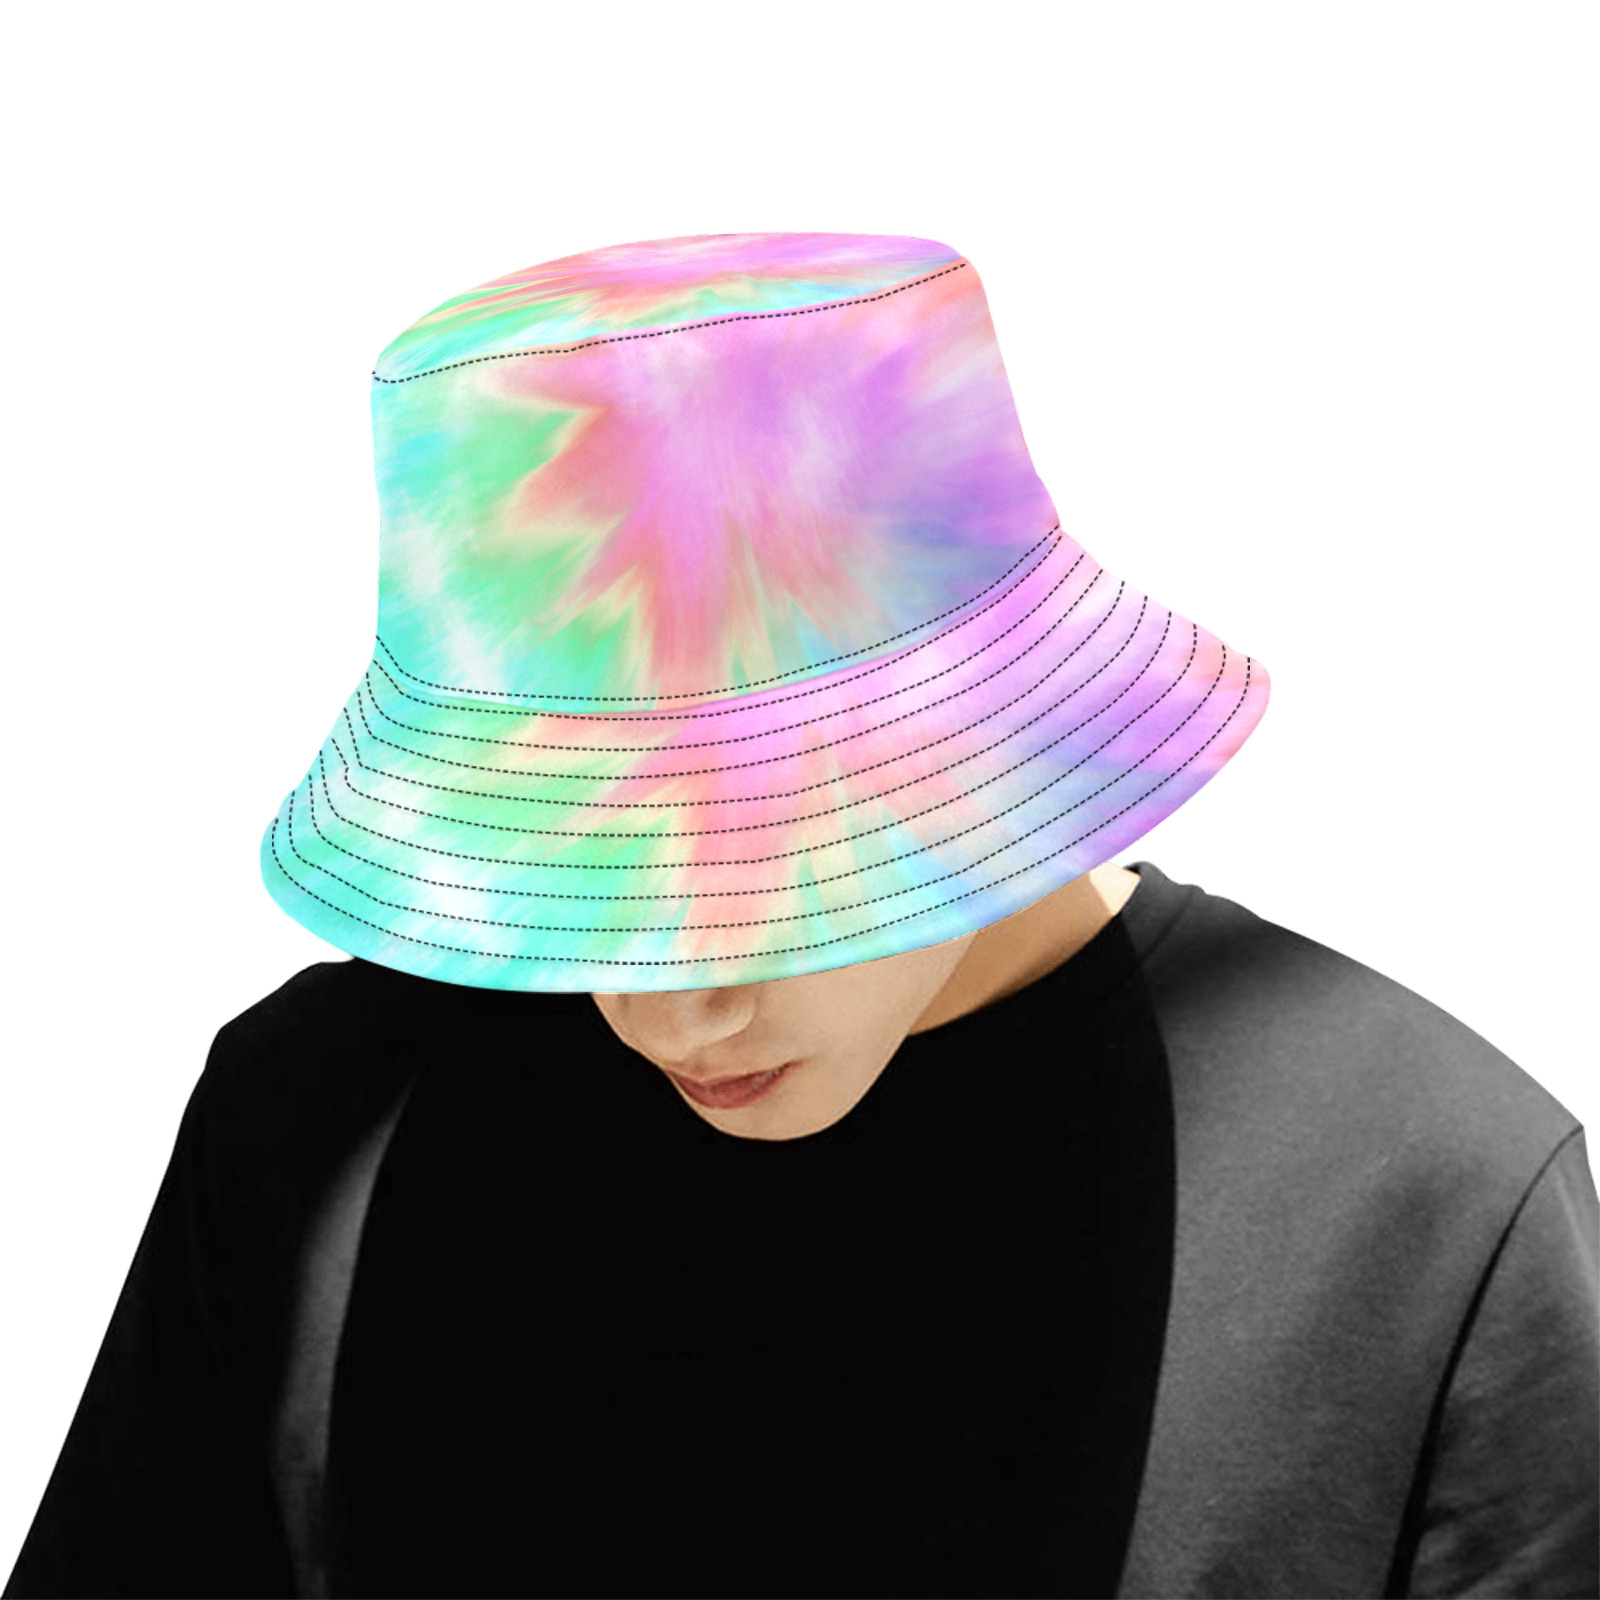 Pastel Tye Dye Unisex Summer Bucket Hat